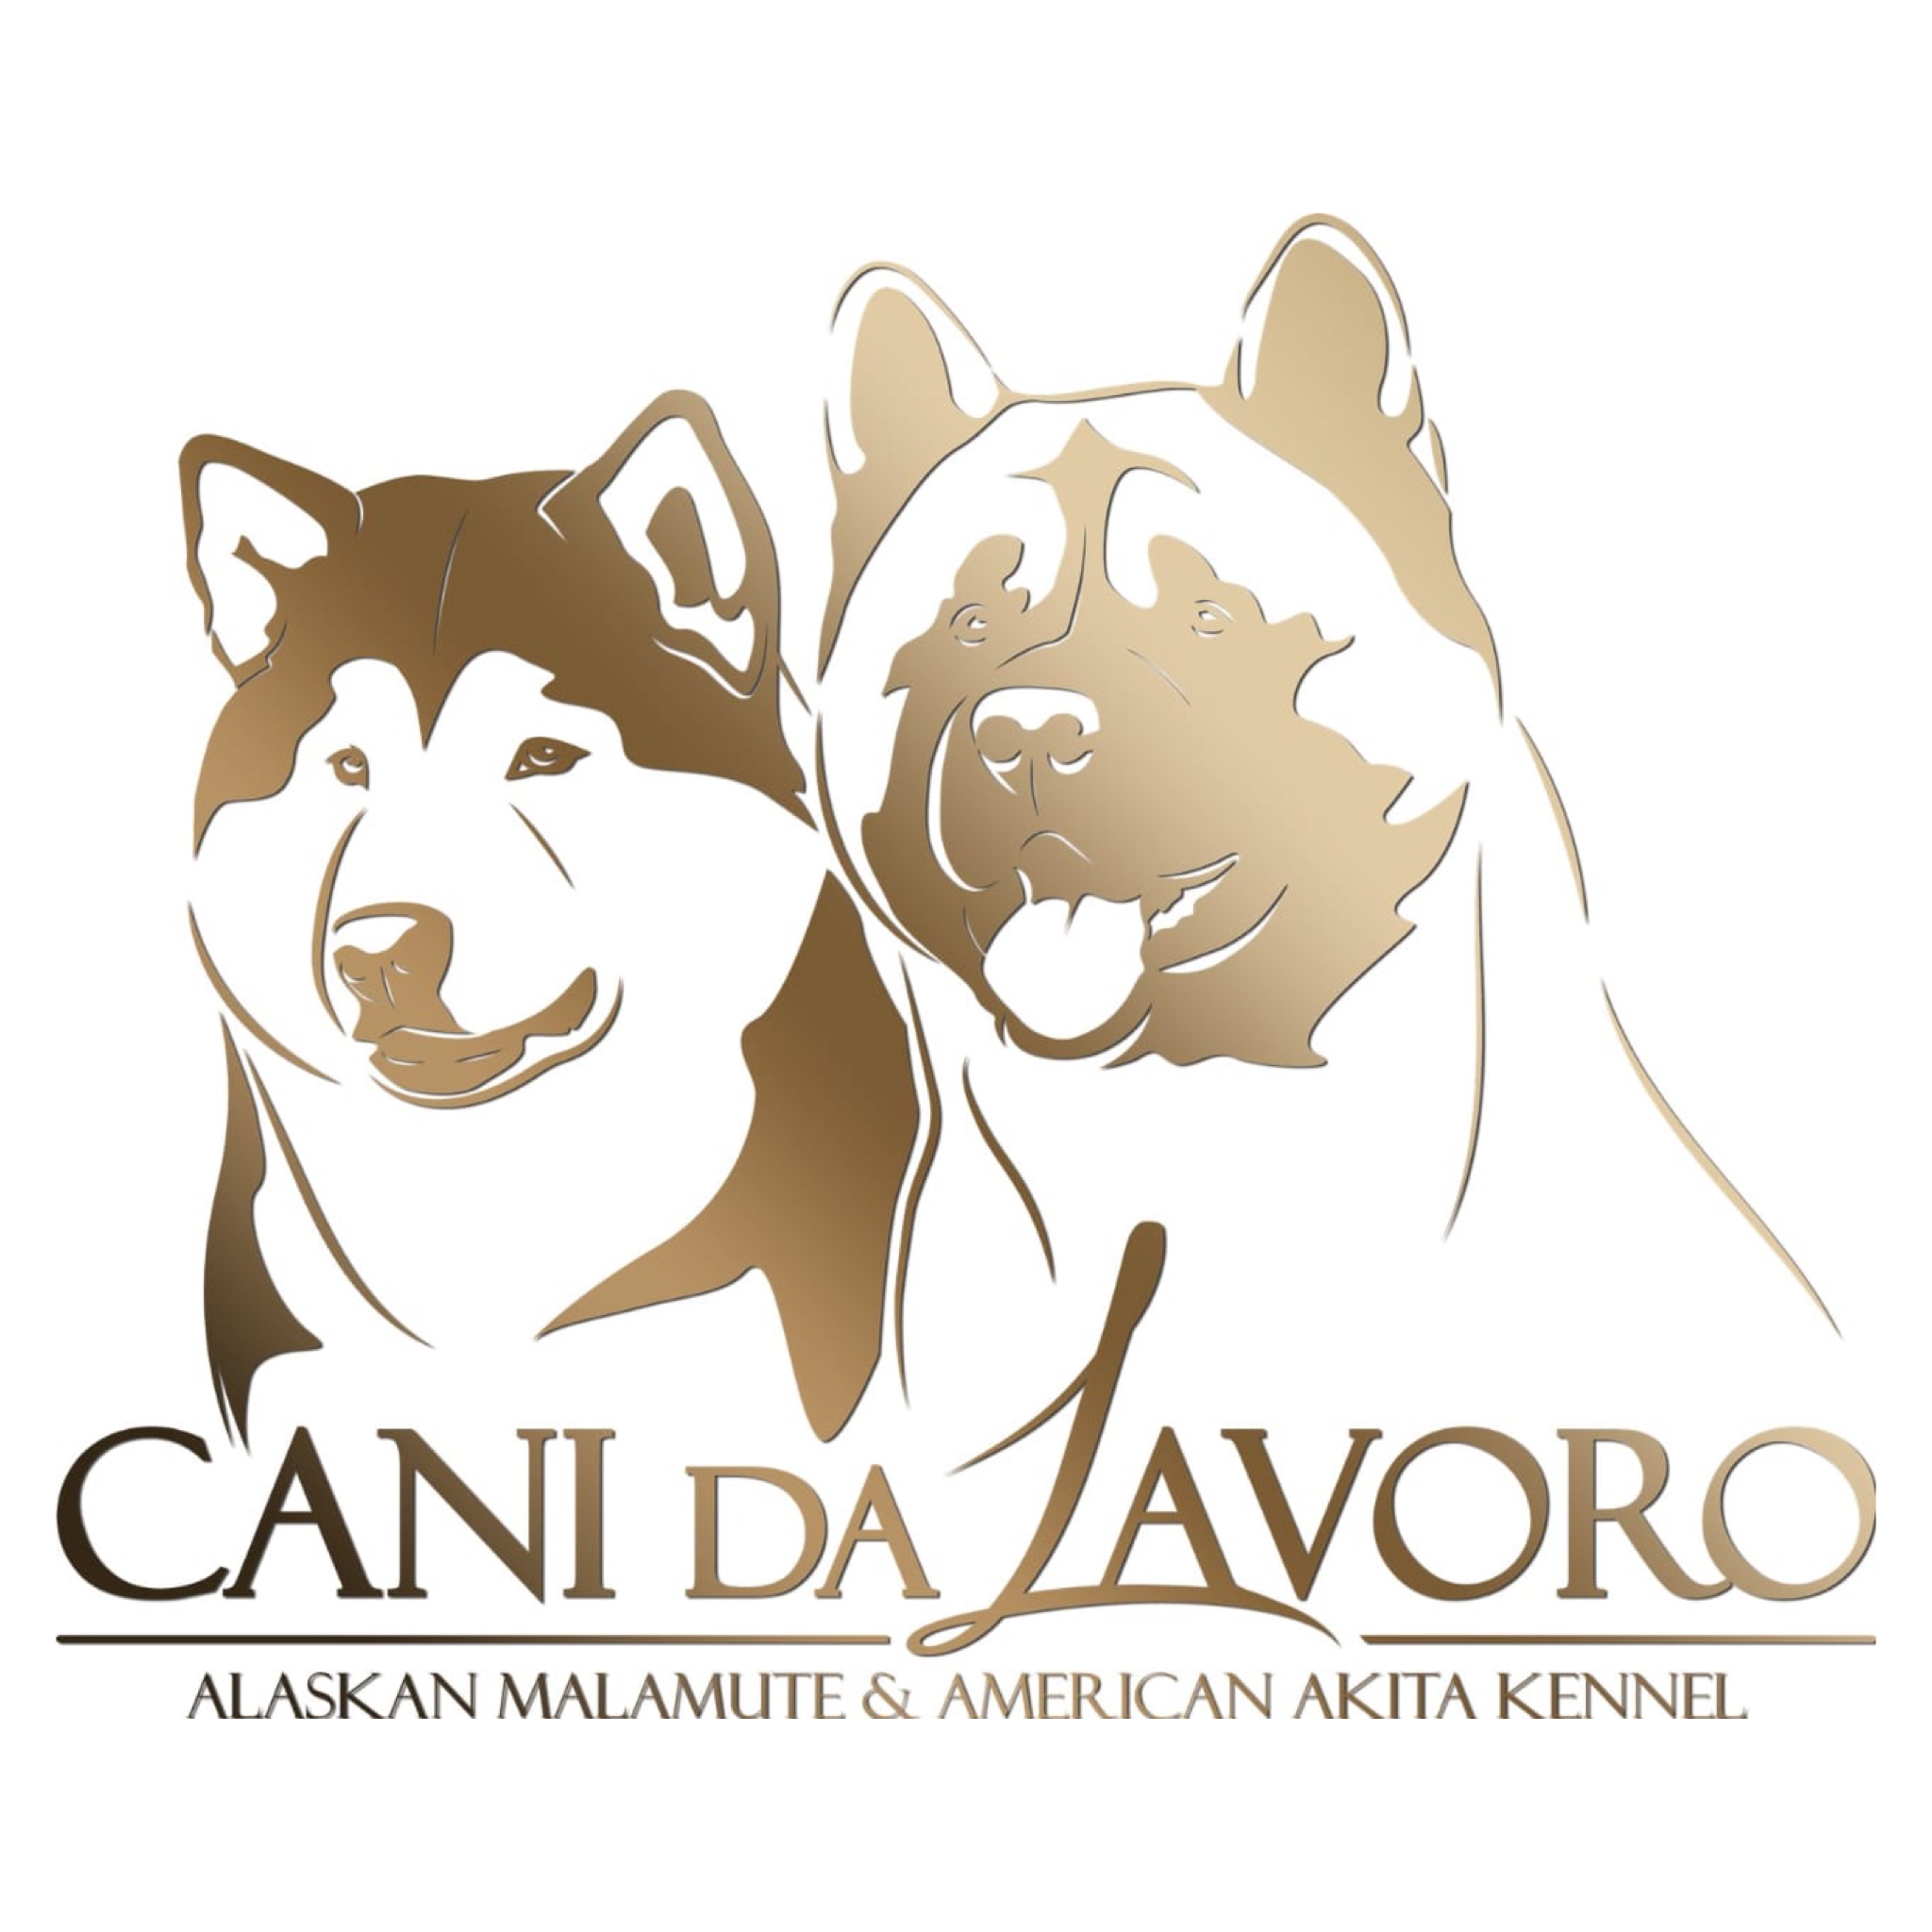 Cani da Zavoro